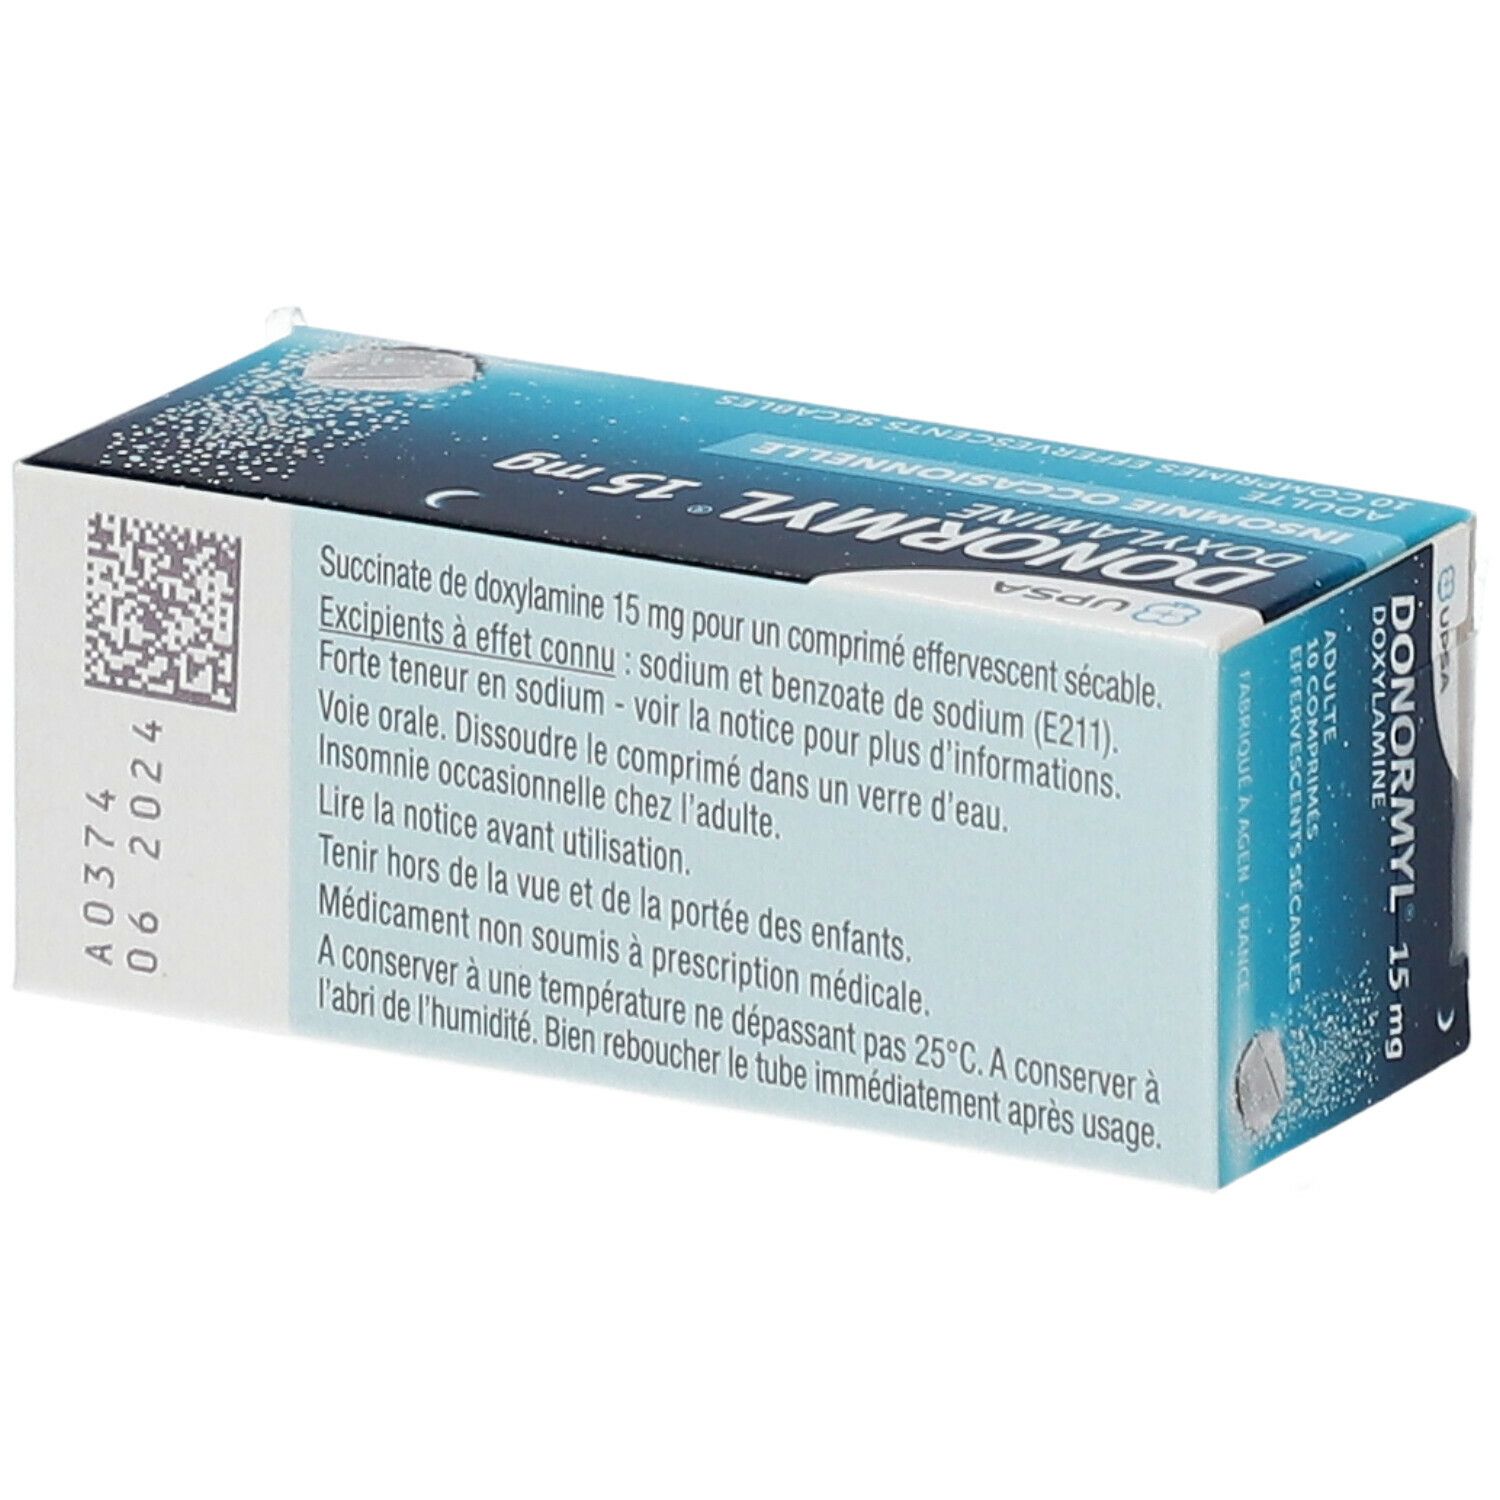 Donormyl® 15 mg Comprimé effervescent sécable